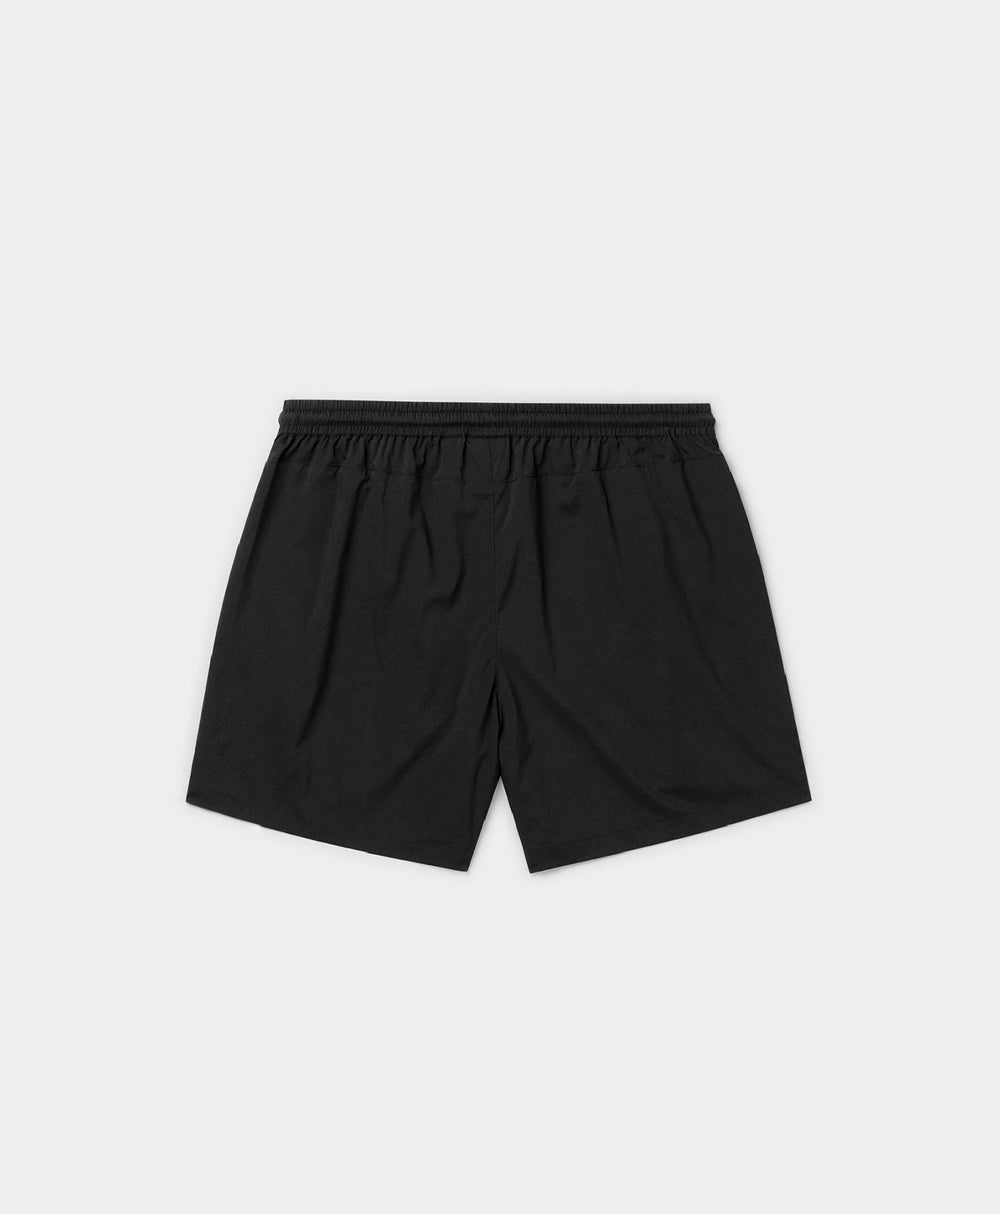 DP - Black Mehani Shorts - Packshot - Rear